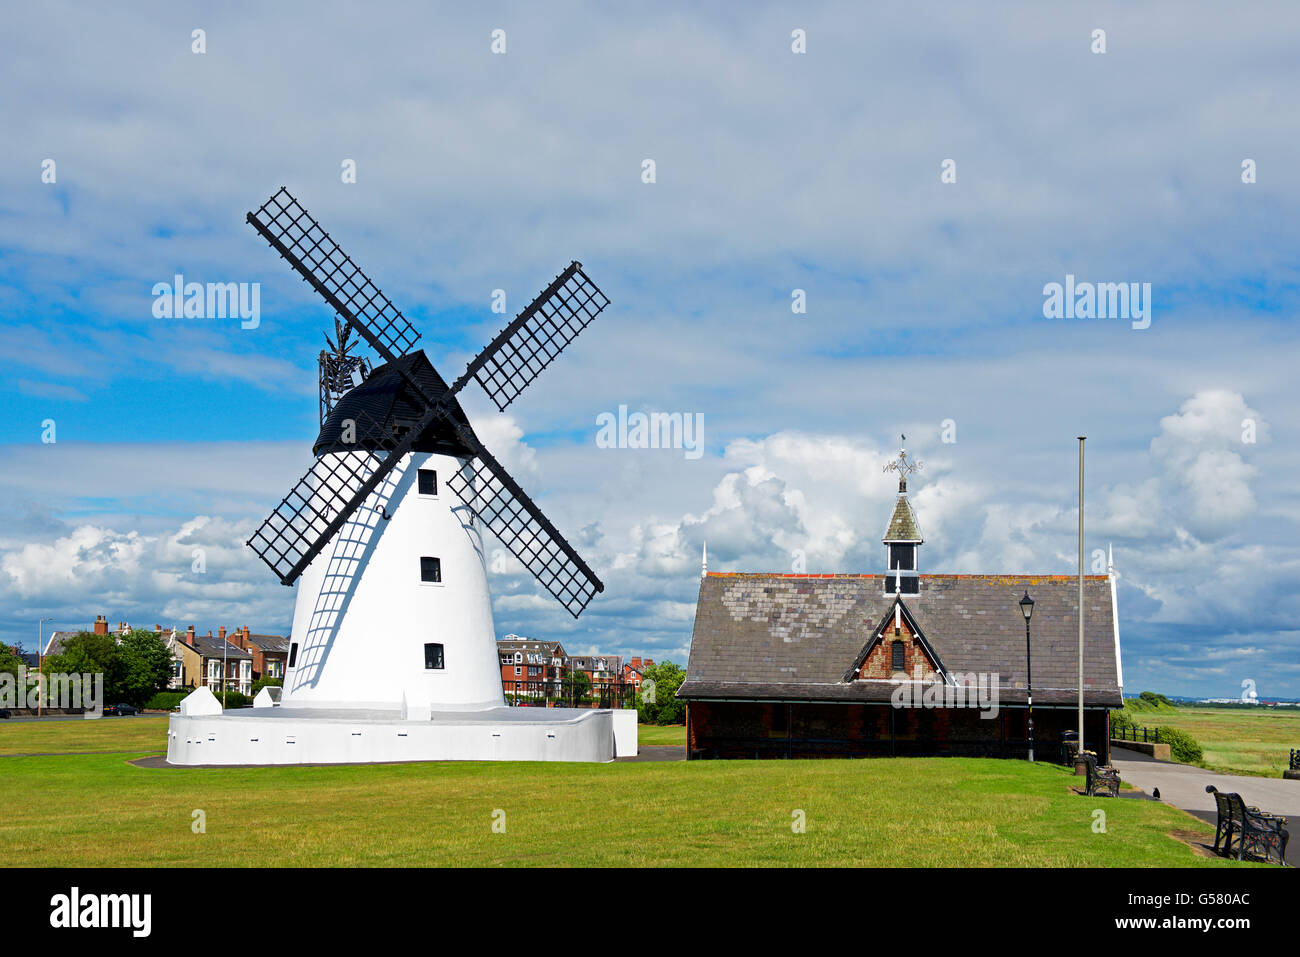 Lytham Windmill, Lytham St Annes, Lancashire, England UK Banque D'Images